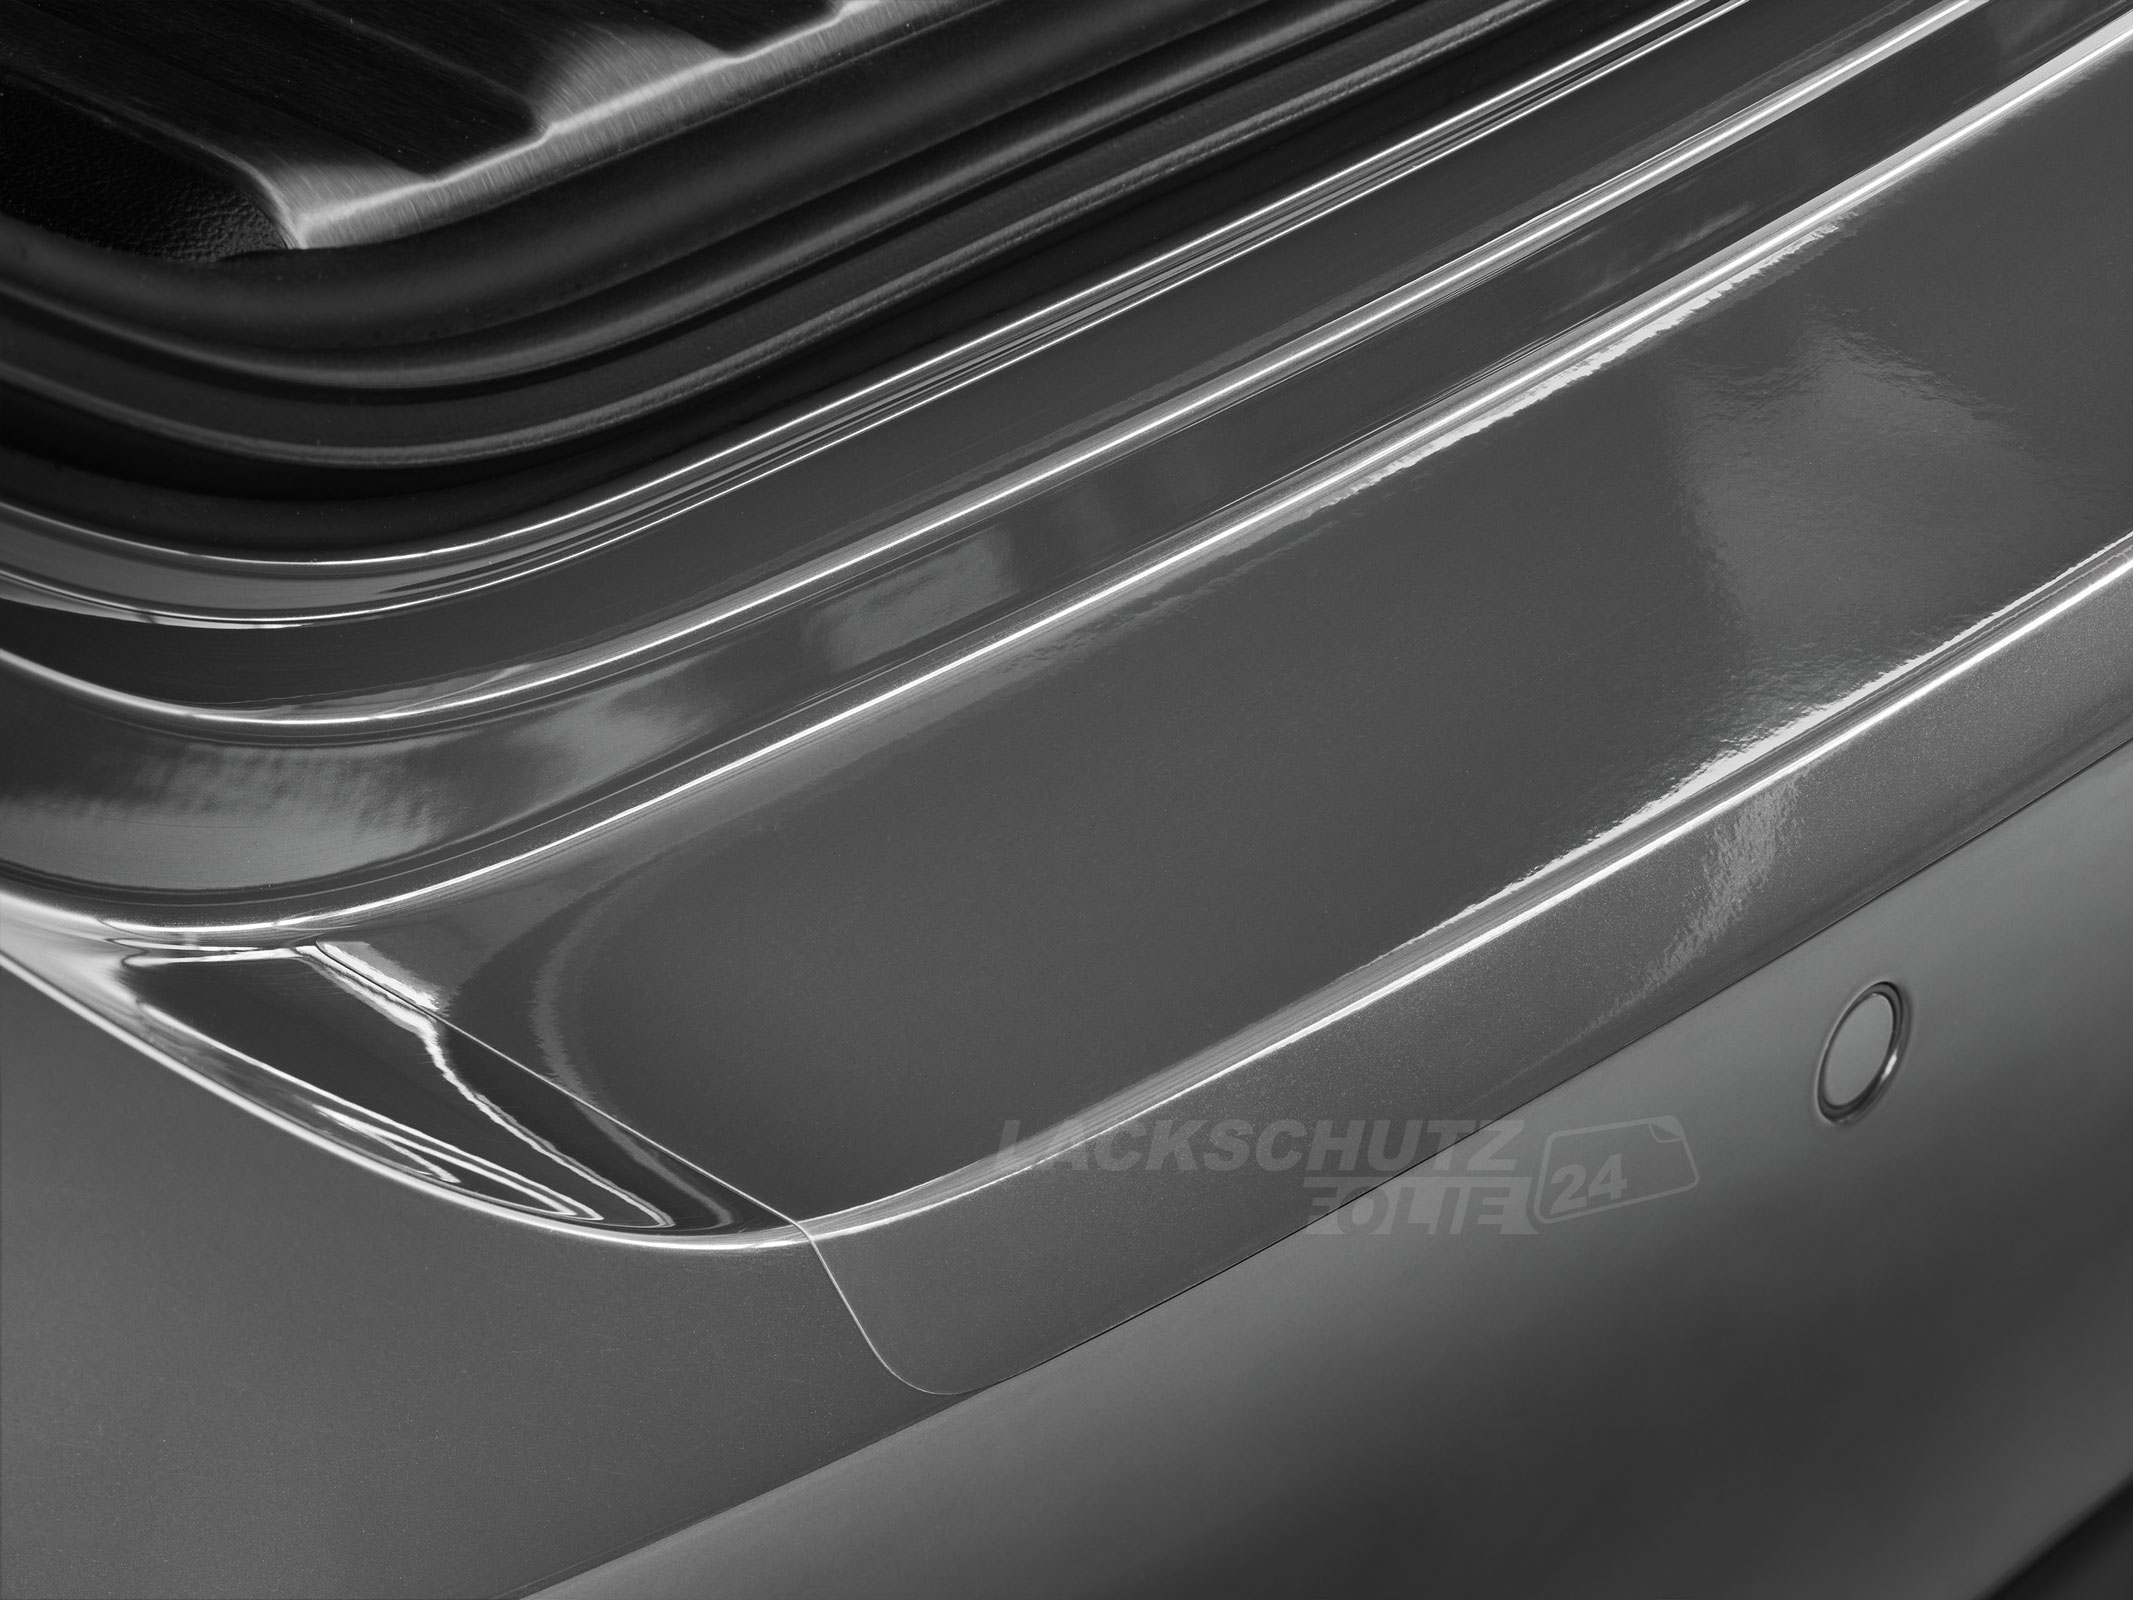 Ladekantenschutzfolie - Transparent Glatt Hochglänzend 240 µm stark für BMW 1er Cabrio Typ E88, BJ 2008-2013